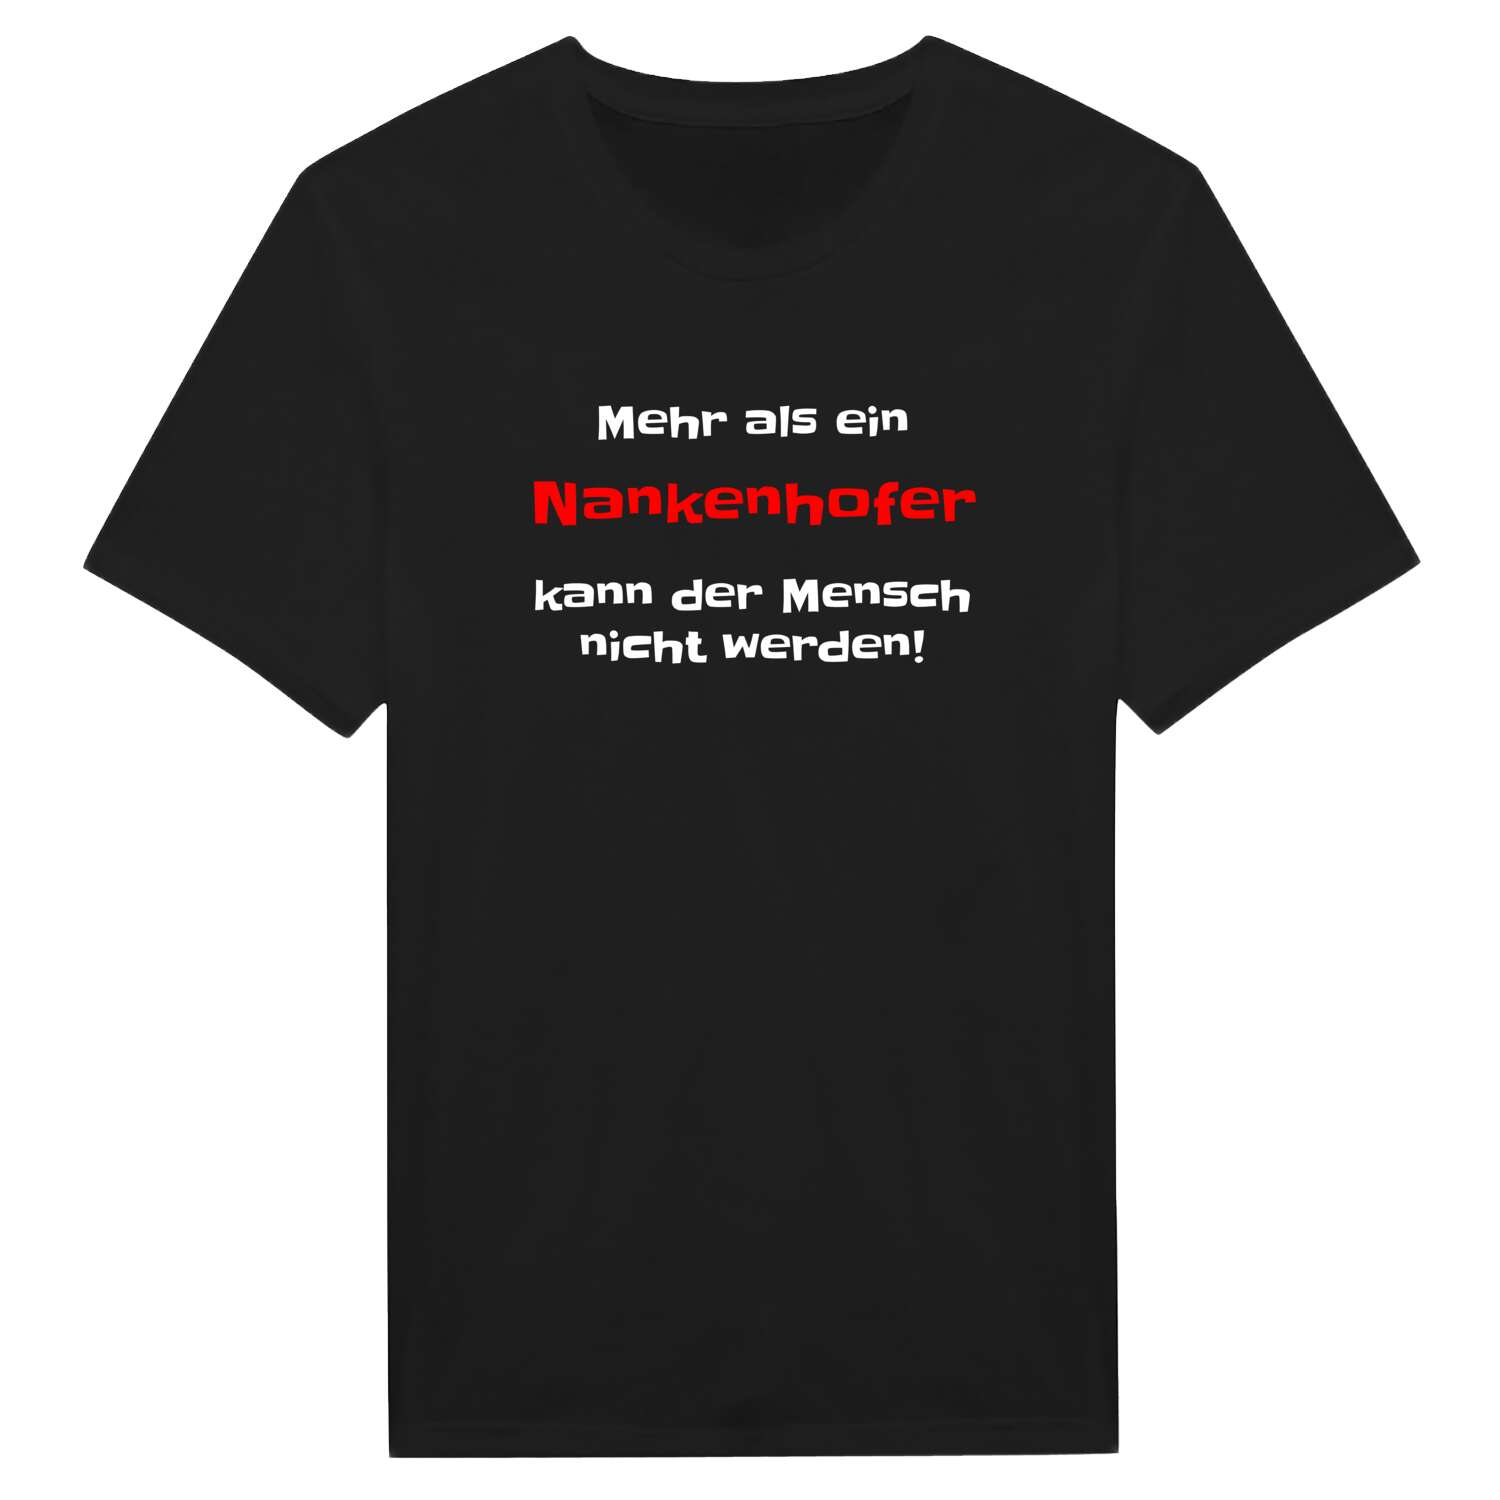 Nankenhof T-Shirt »Mehr als ein«